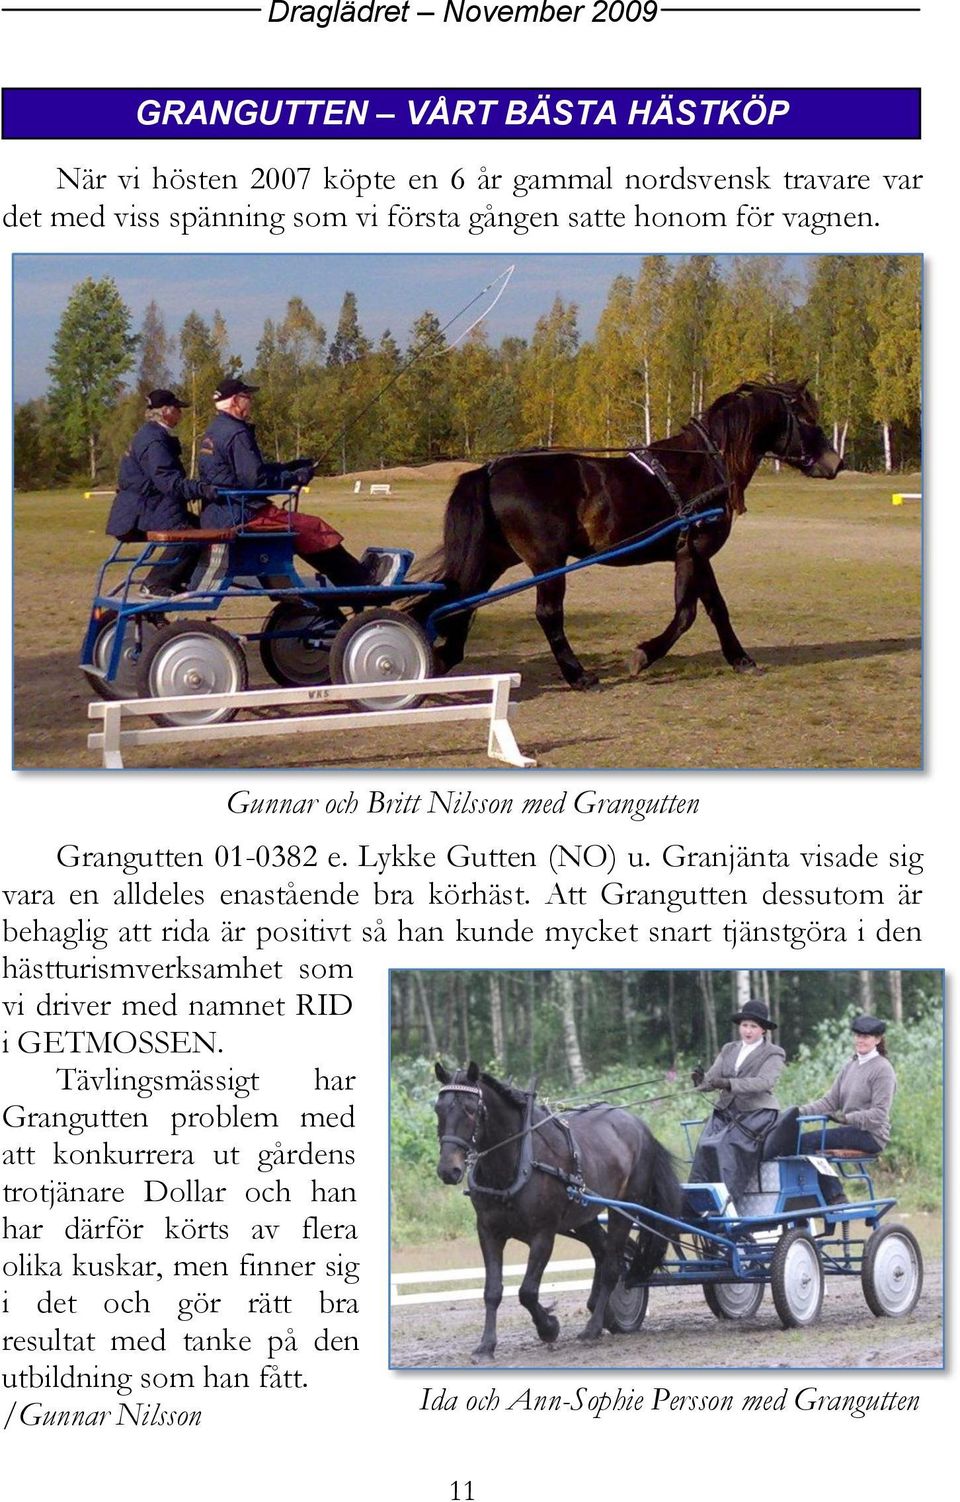 Att Grangutten dessutom är behaglig att rida är positivt så han kunde mycket snart tjänstgöra i den hästturismverksamhet som vi driver med namnet RID i GETMOSSEN.